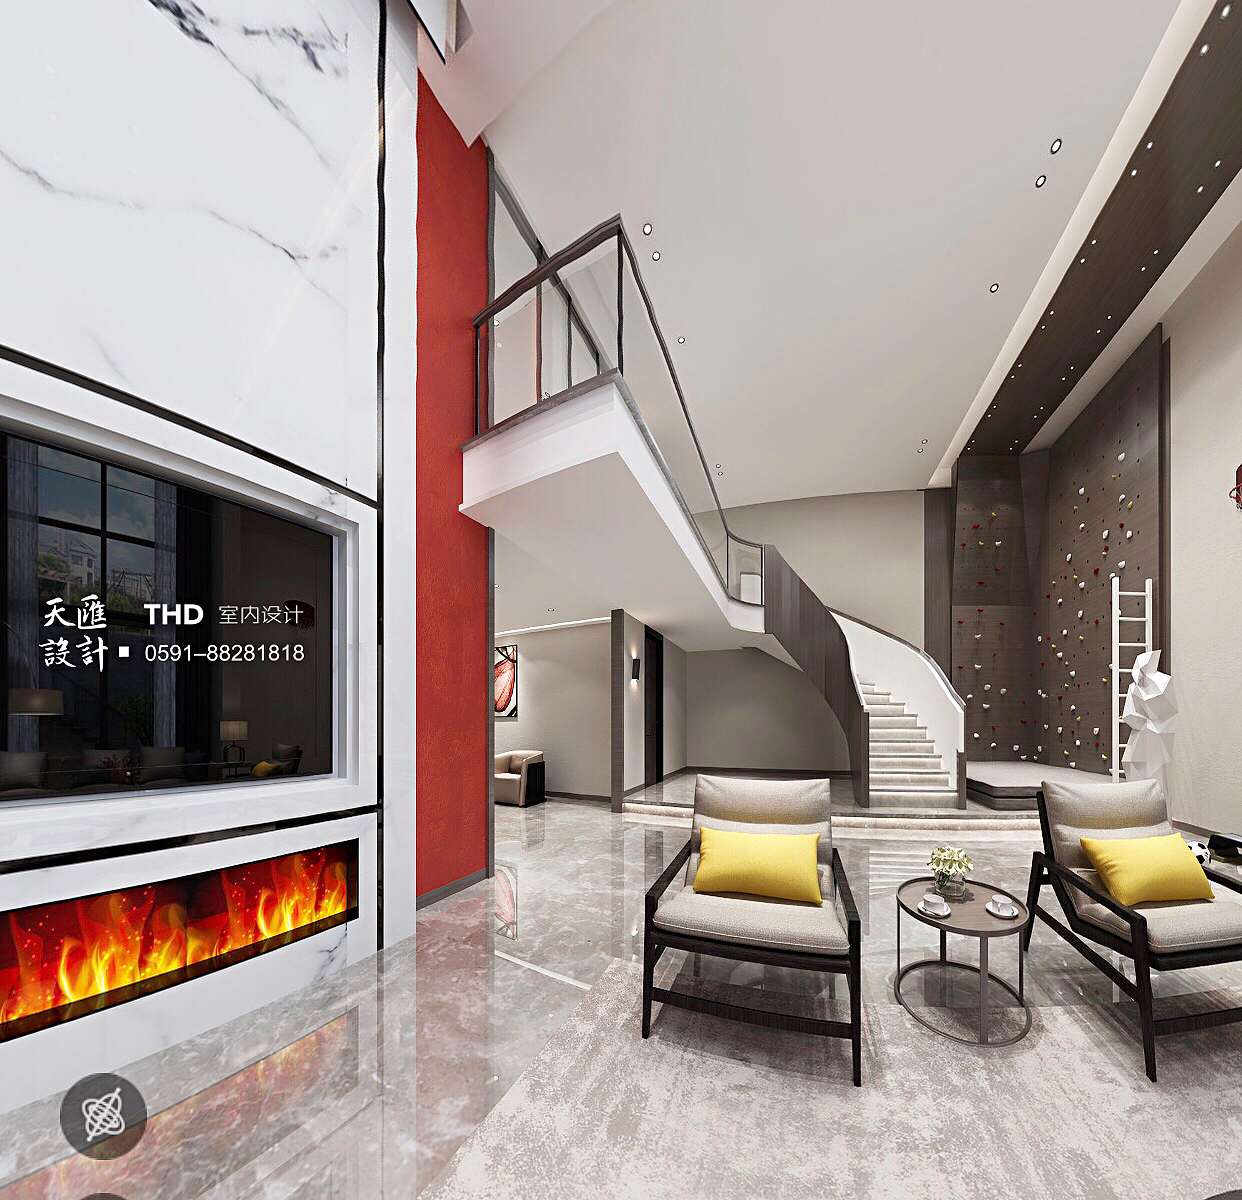 简约 80后 新中式 客厅 中国红 复式 楼梯 别墅 游小华 客厅图片来自福建天汇设计工程有限公司在新中式风格《懿》的分享